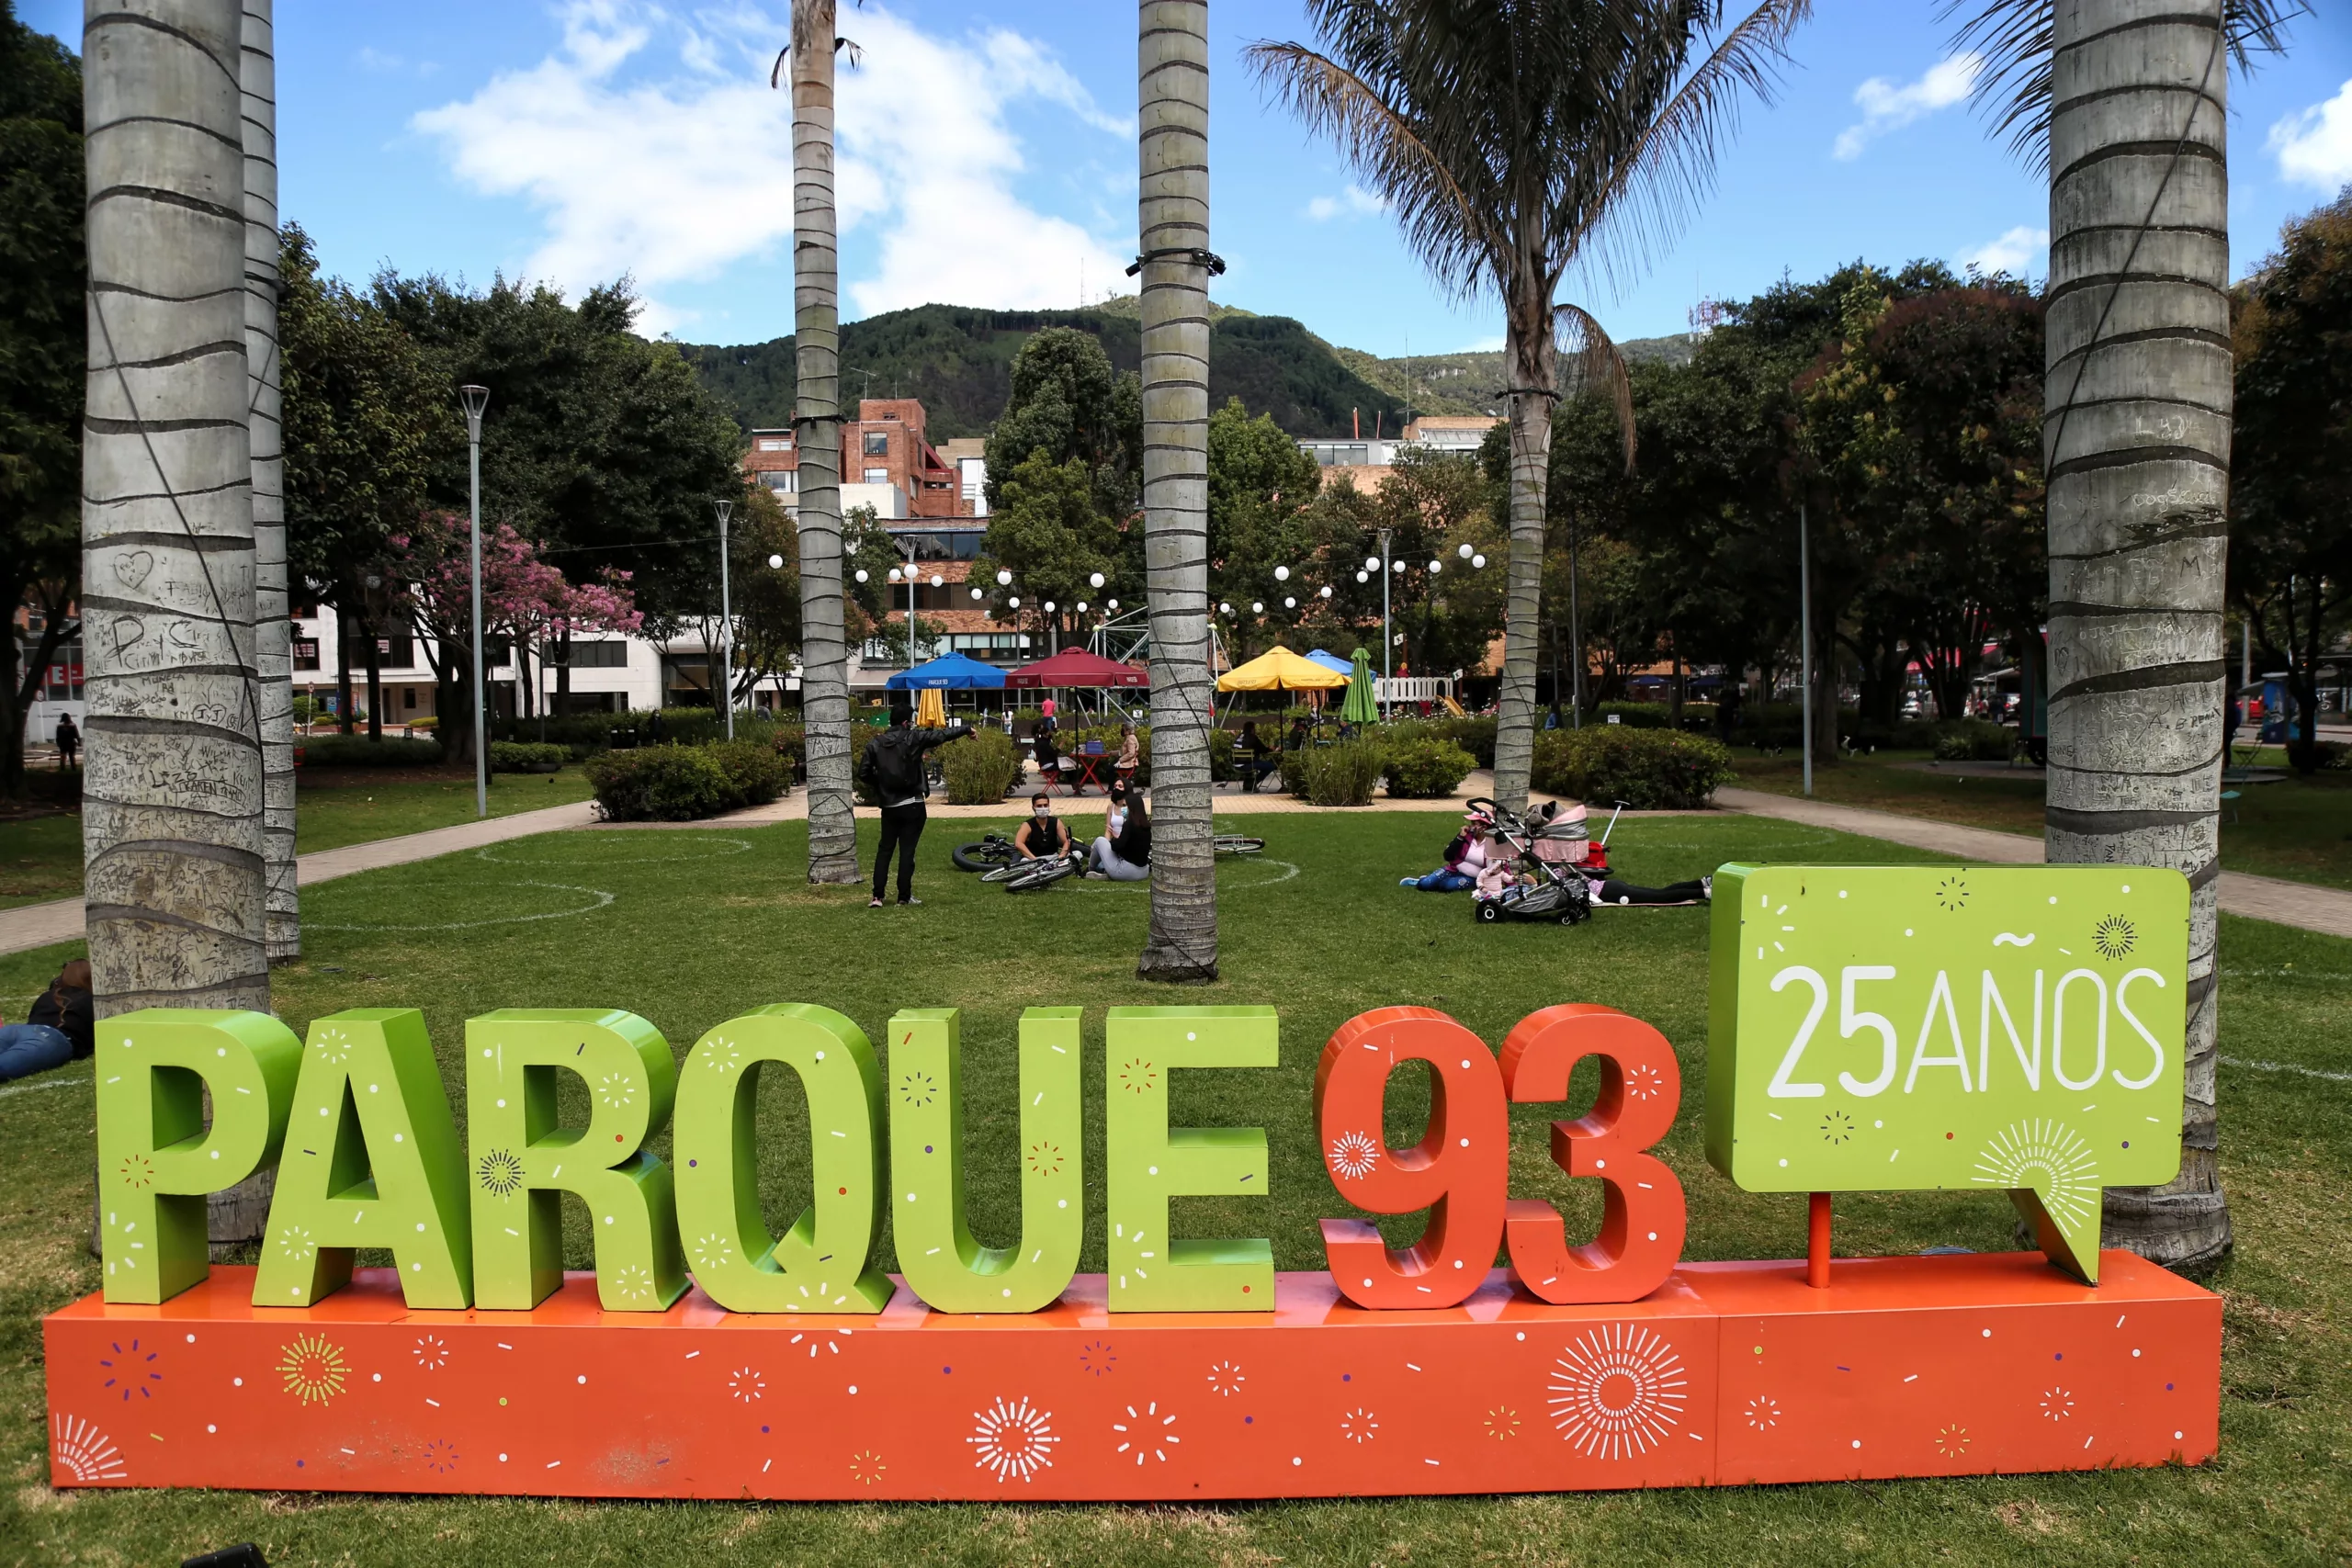 Parque de la 93 🎄: Una joya verde en el corazón de Bogotá